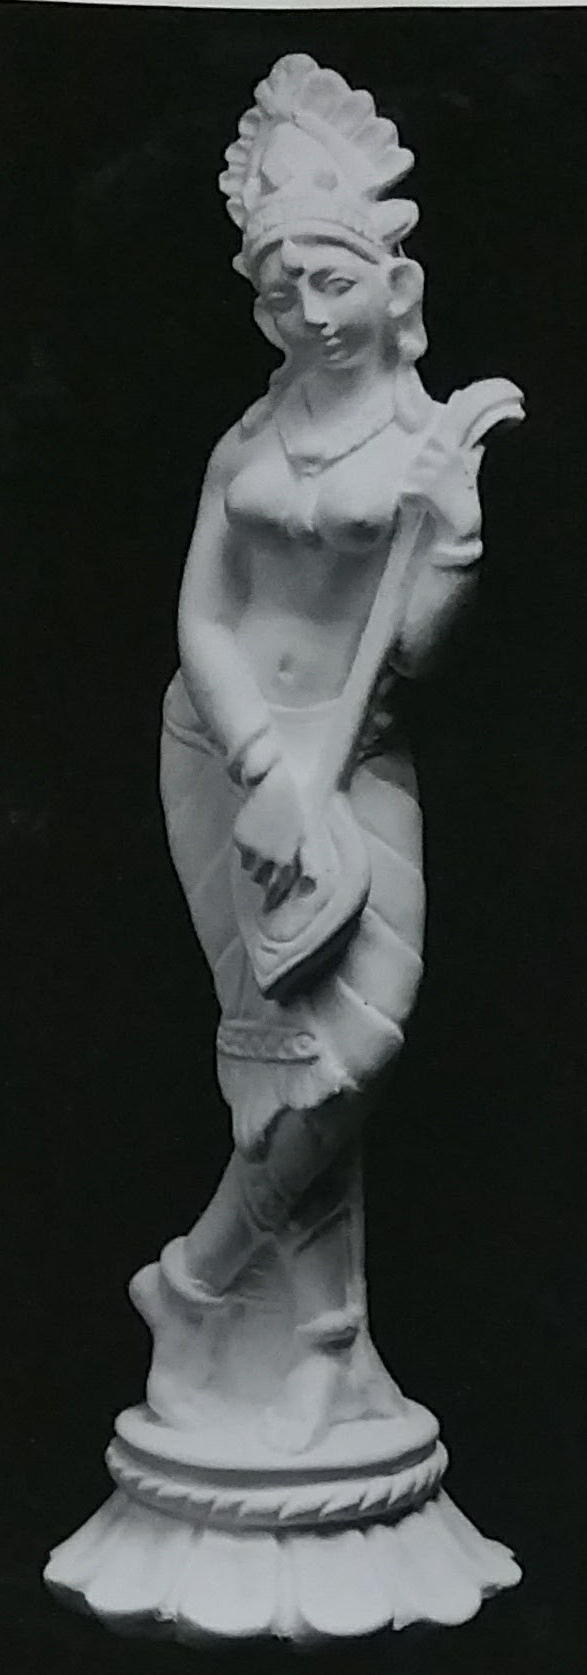 Raw chalkware statue